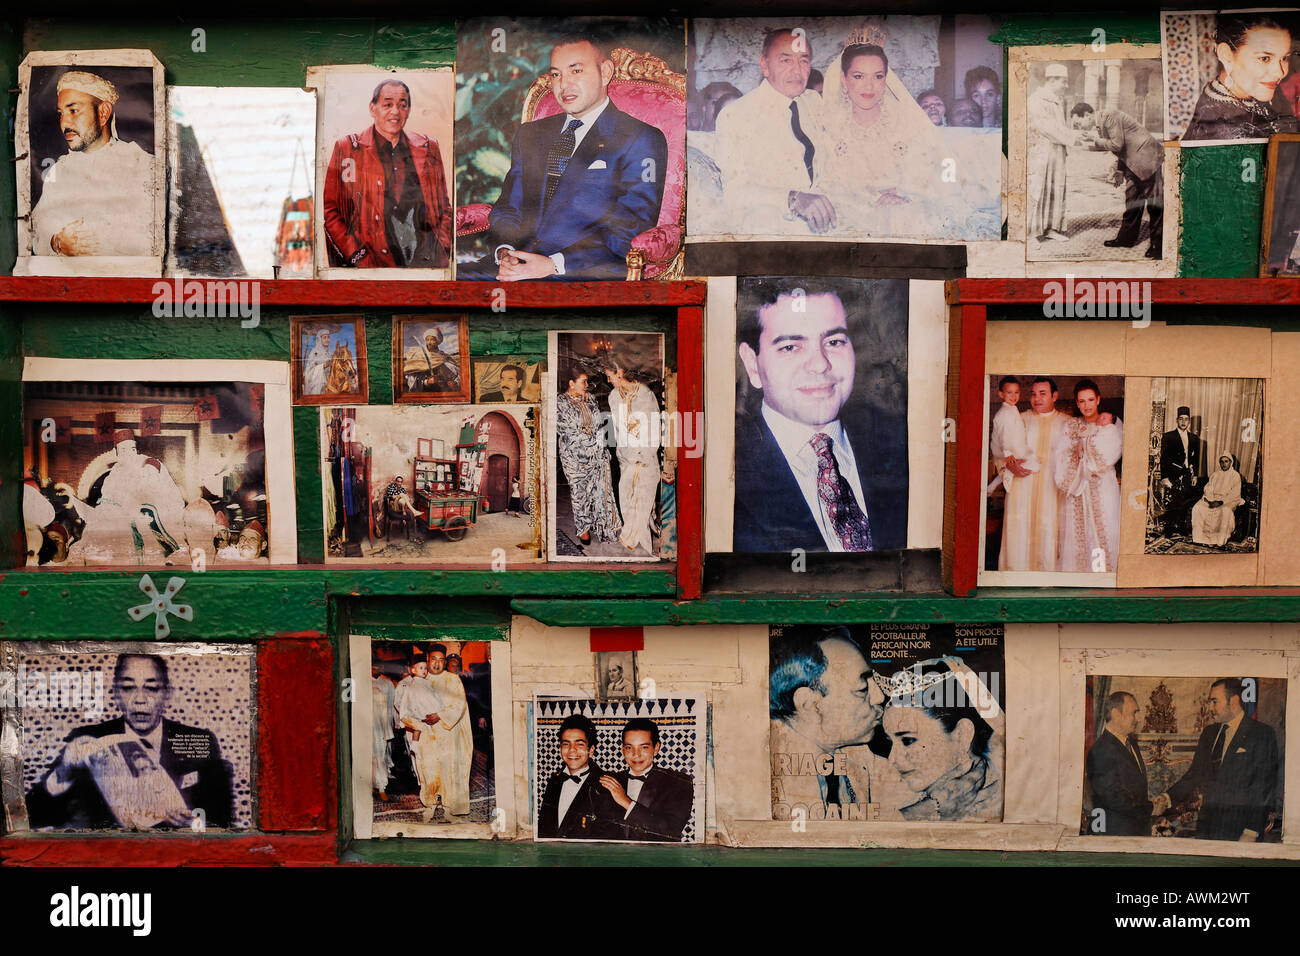 Verblasste, vergilbte Bilder marokkanischer Königsfamilie, Könige Hassan II und Mohammed VI. An einem Kiosk im historischen Medina-Viertel Marrake Stockfoto